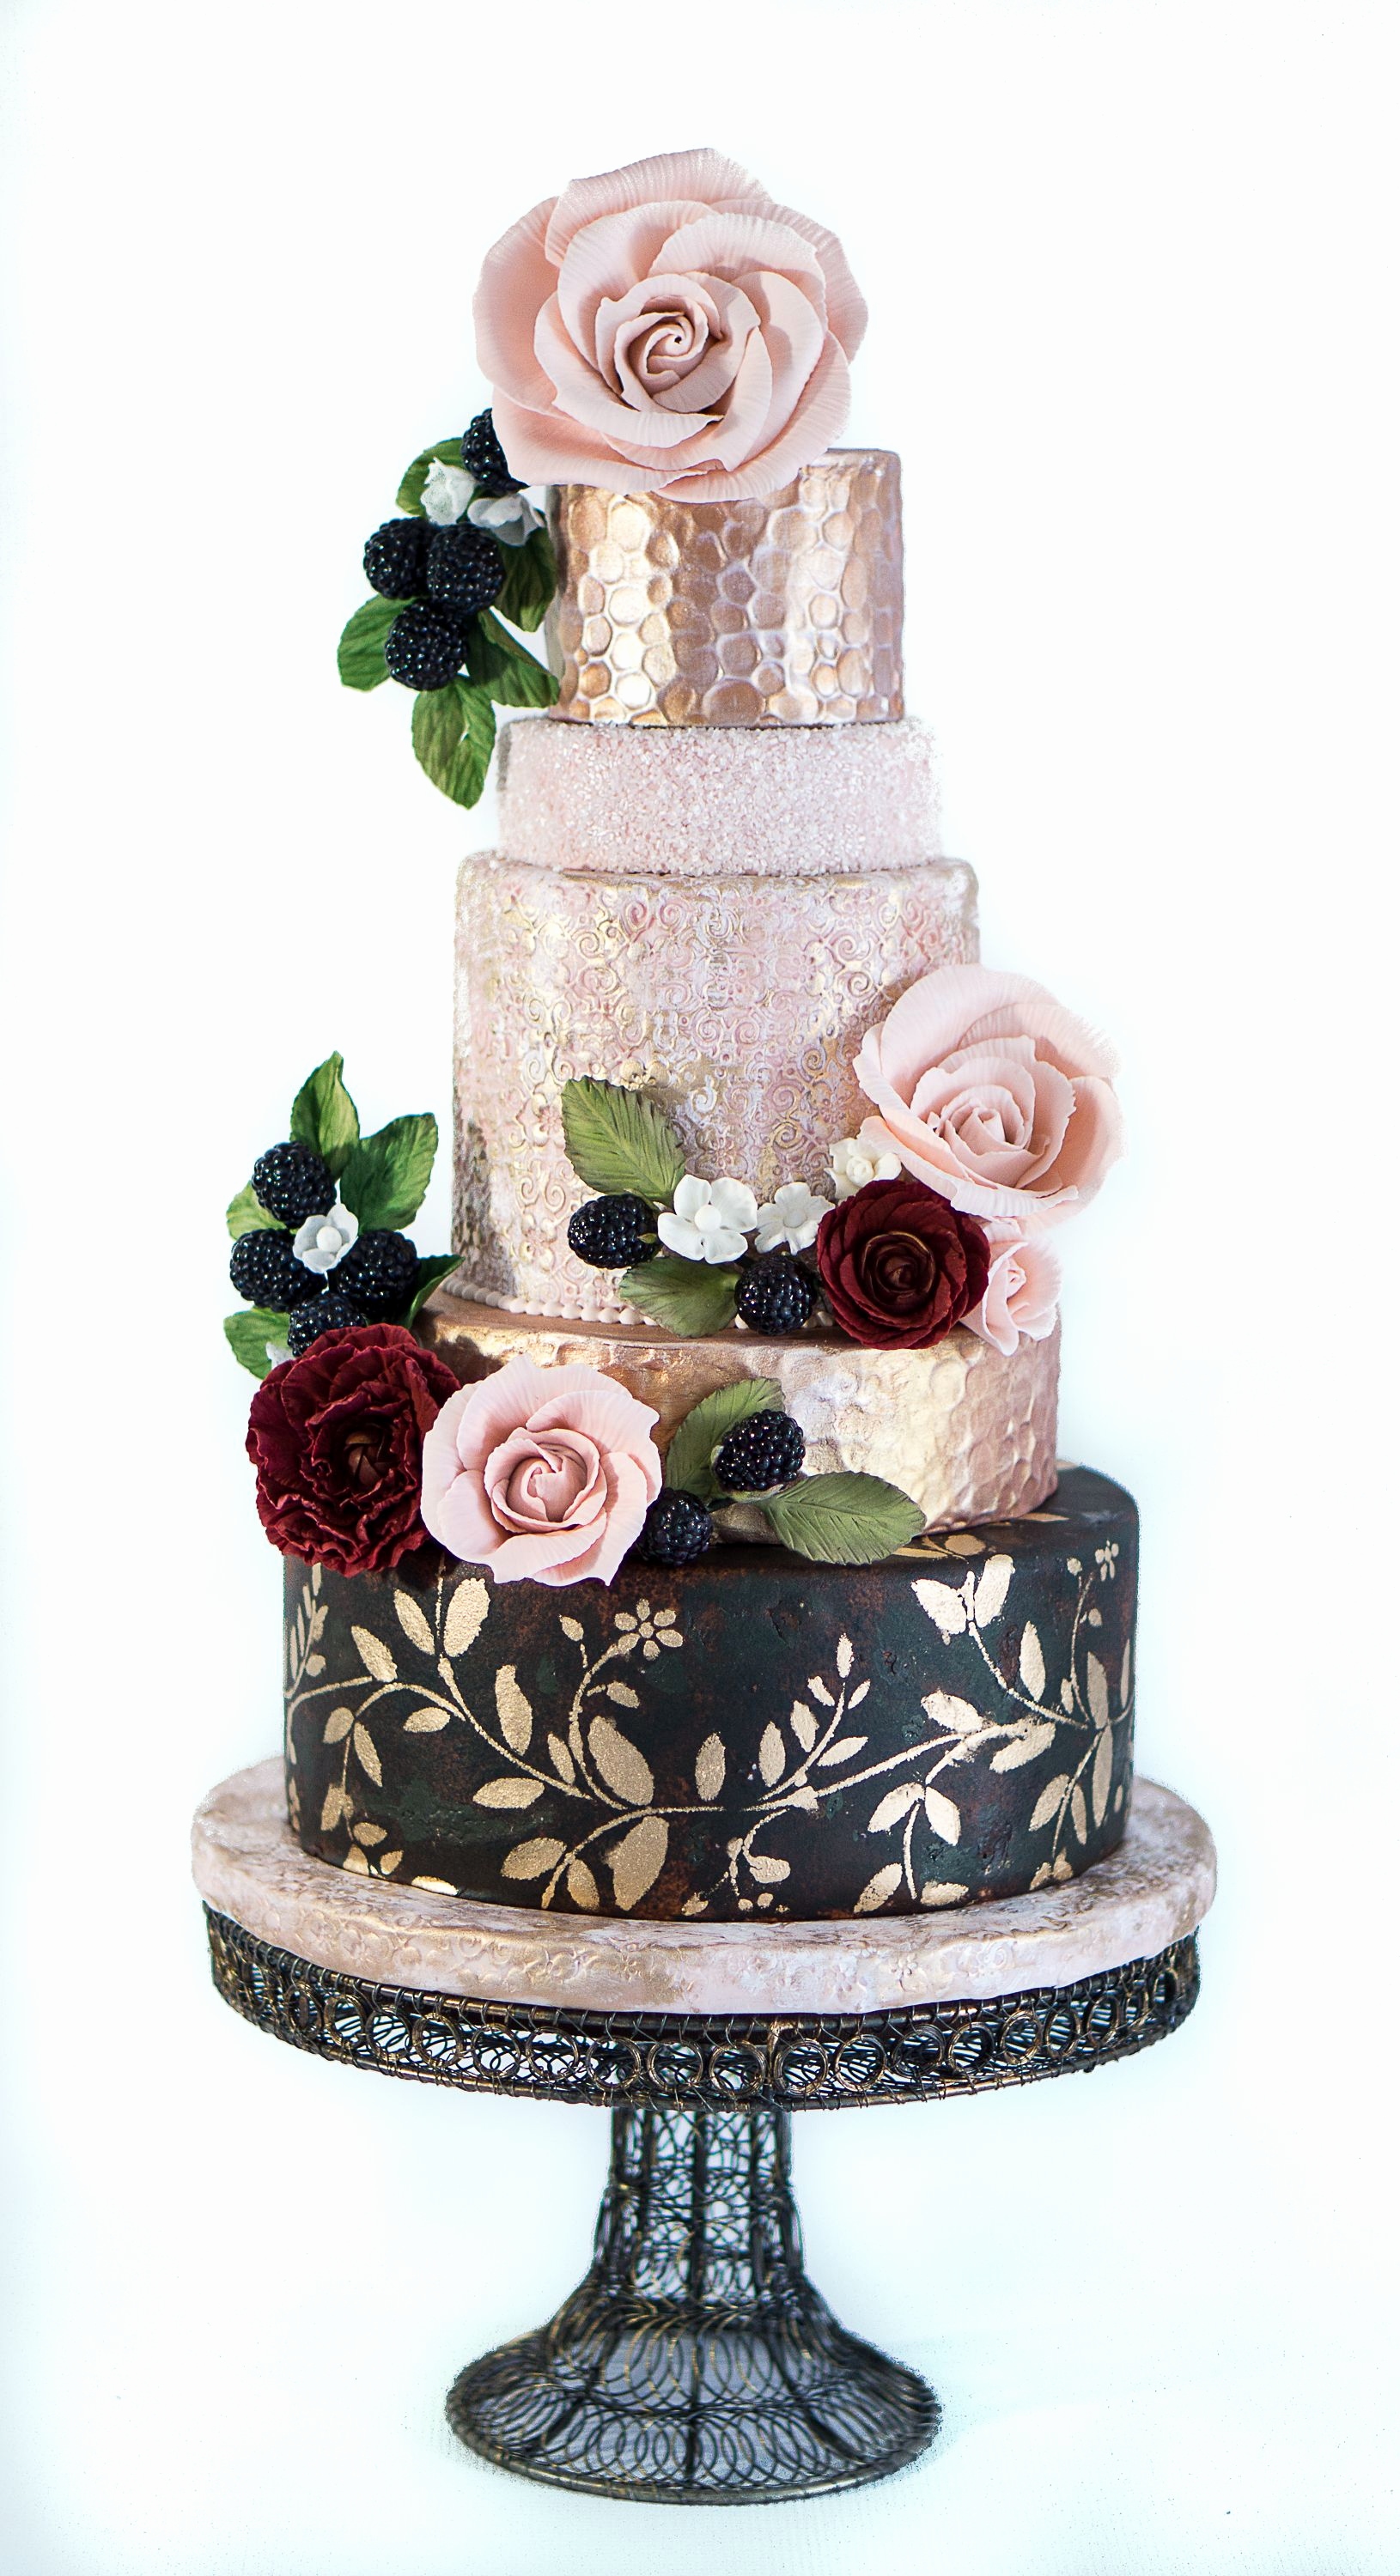 15 mẫu bánh cưới Fondant 5 tầng - Vẻ đẹp của những chiếc bánh cưới sang trọng bậc nhất